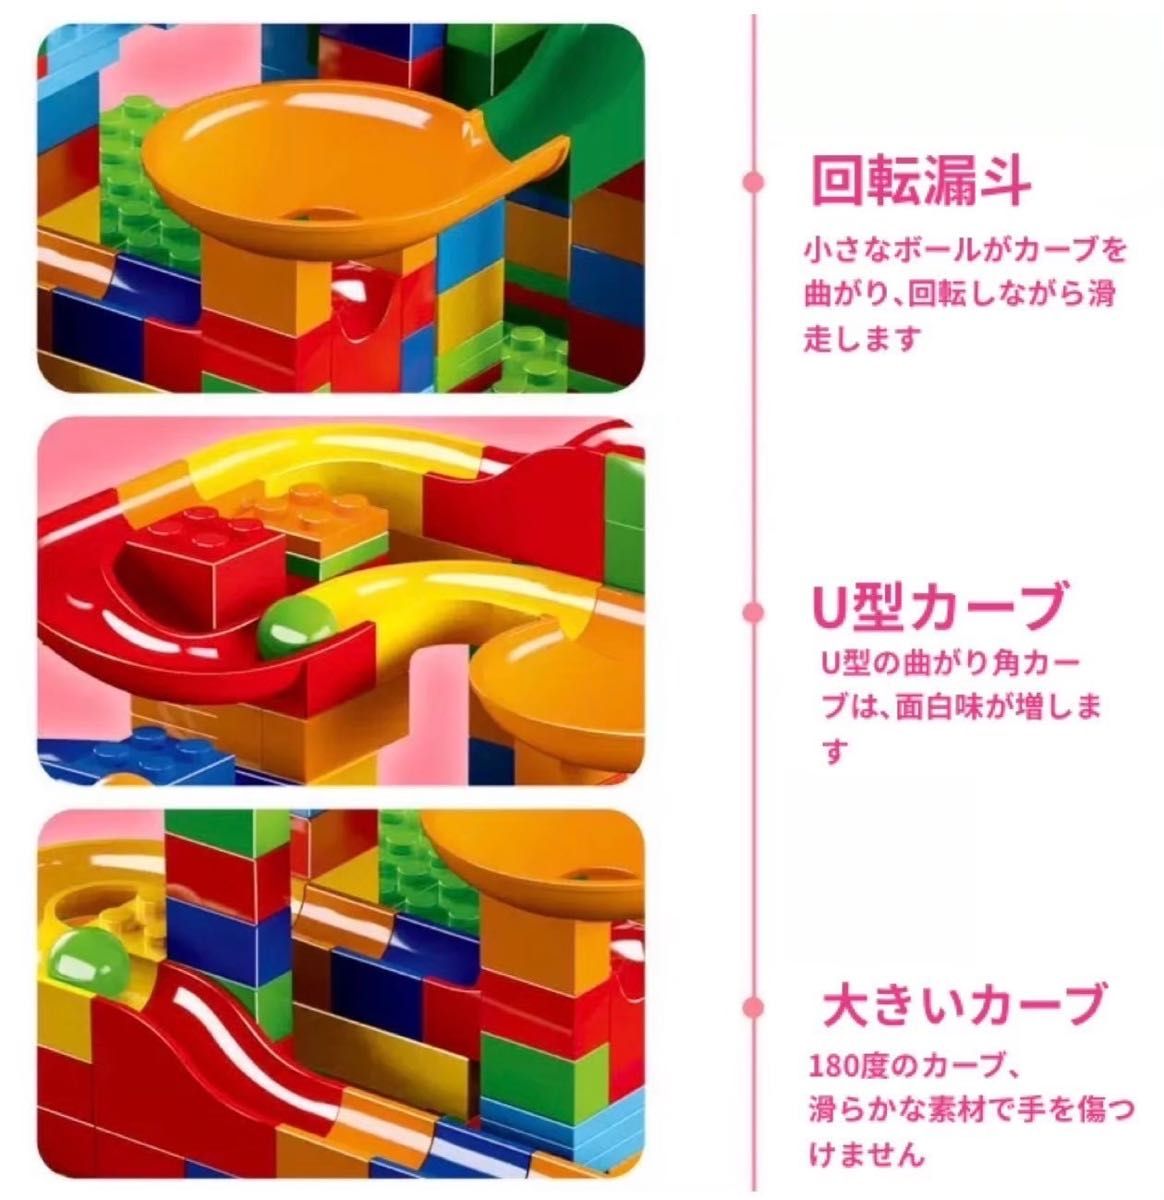 ボールコースター レゴ互換 ブロック 168ピース 大容量 知育玩具 168pcs レゴ互換 知育玩具 モンテッソーリ  互換品